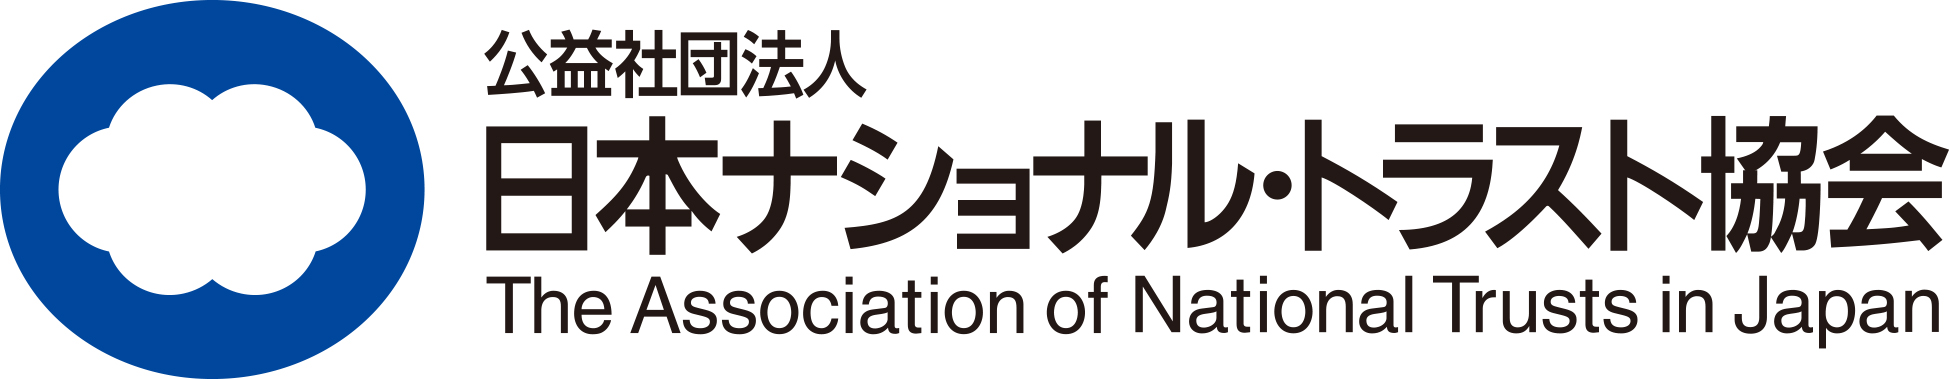 日本ナショナル・トラスト協会